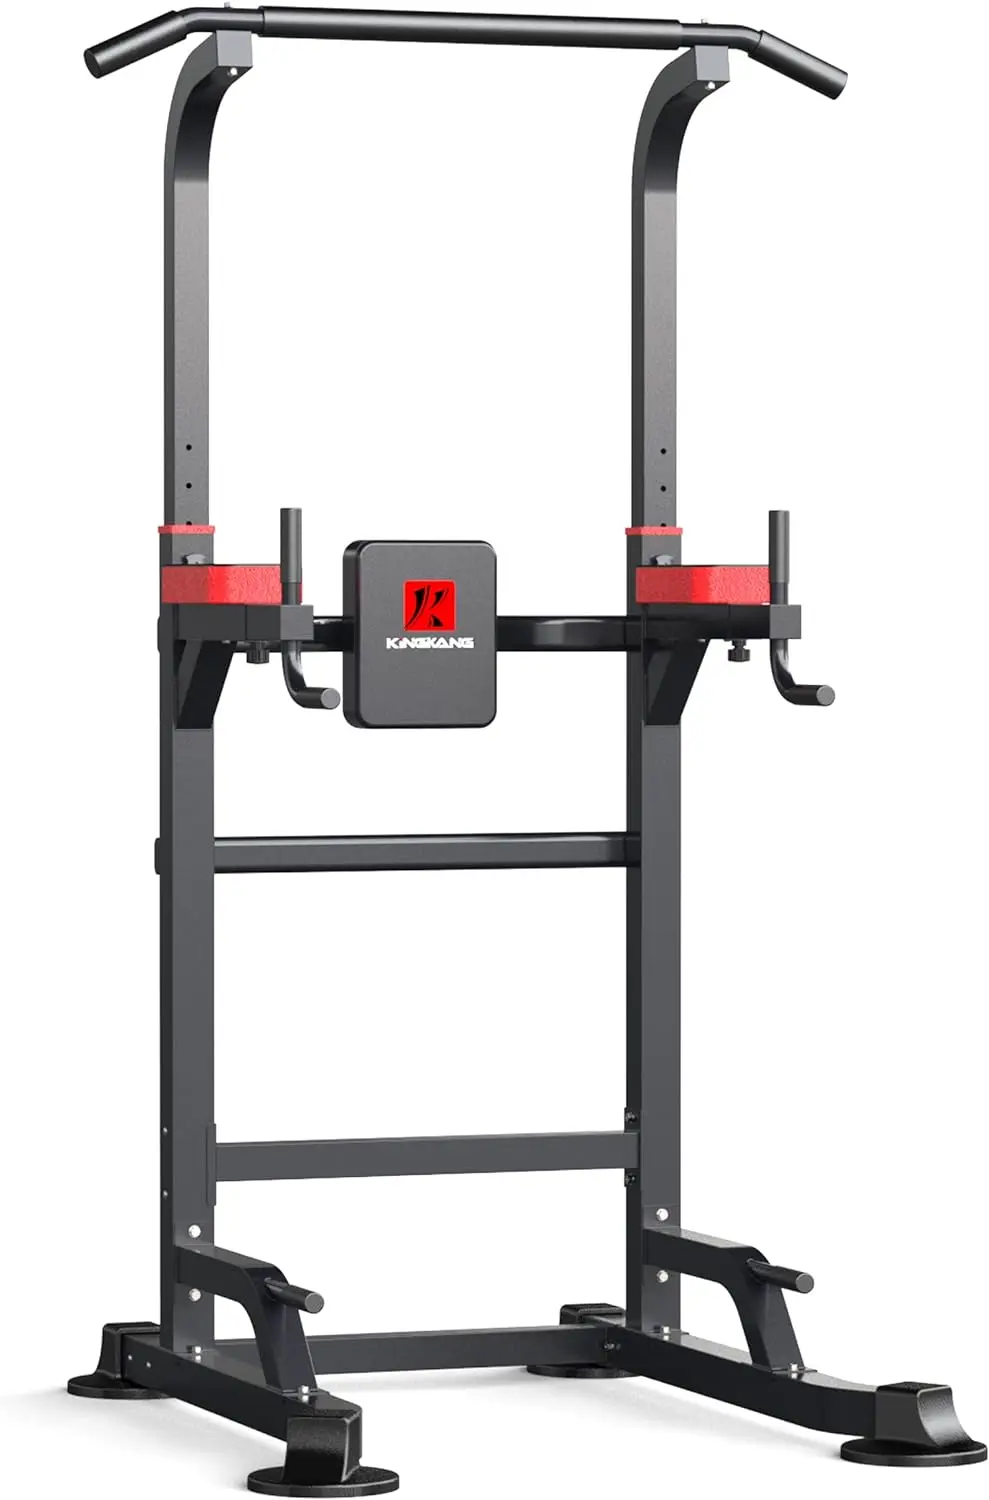 

Башенное оборудование для тренировок, тренажер для домашнего тренажерного зала с регулируемой высотой, тренажер для силовых тренировок и фитнеса, оборудование для упражнений Dum